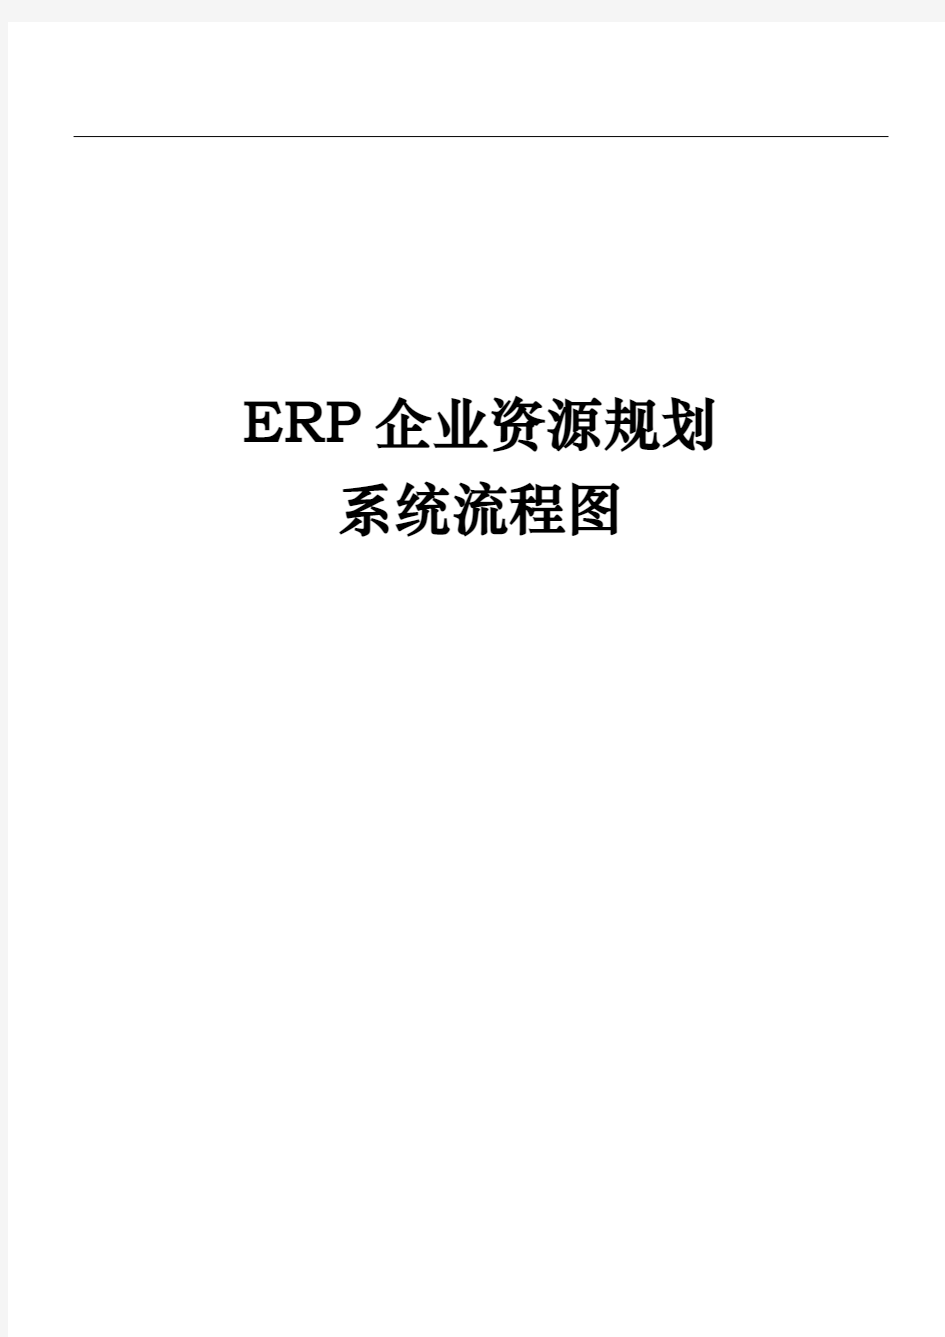 企业ERP系统库存管理流程图